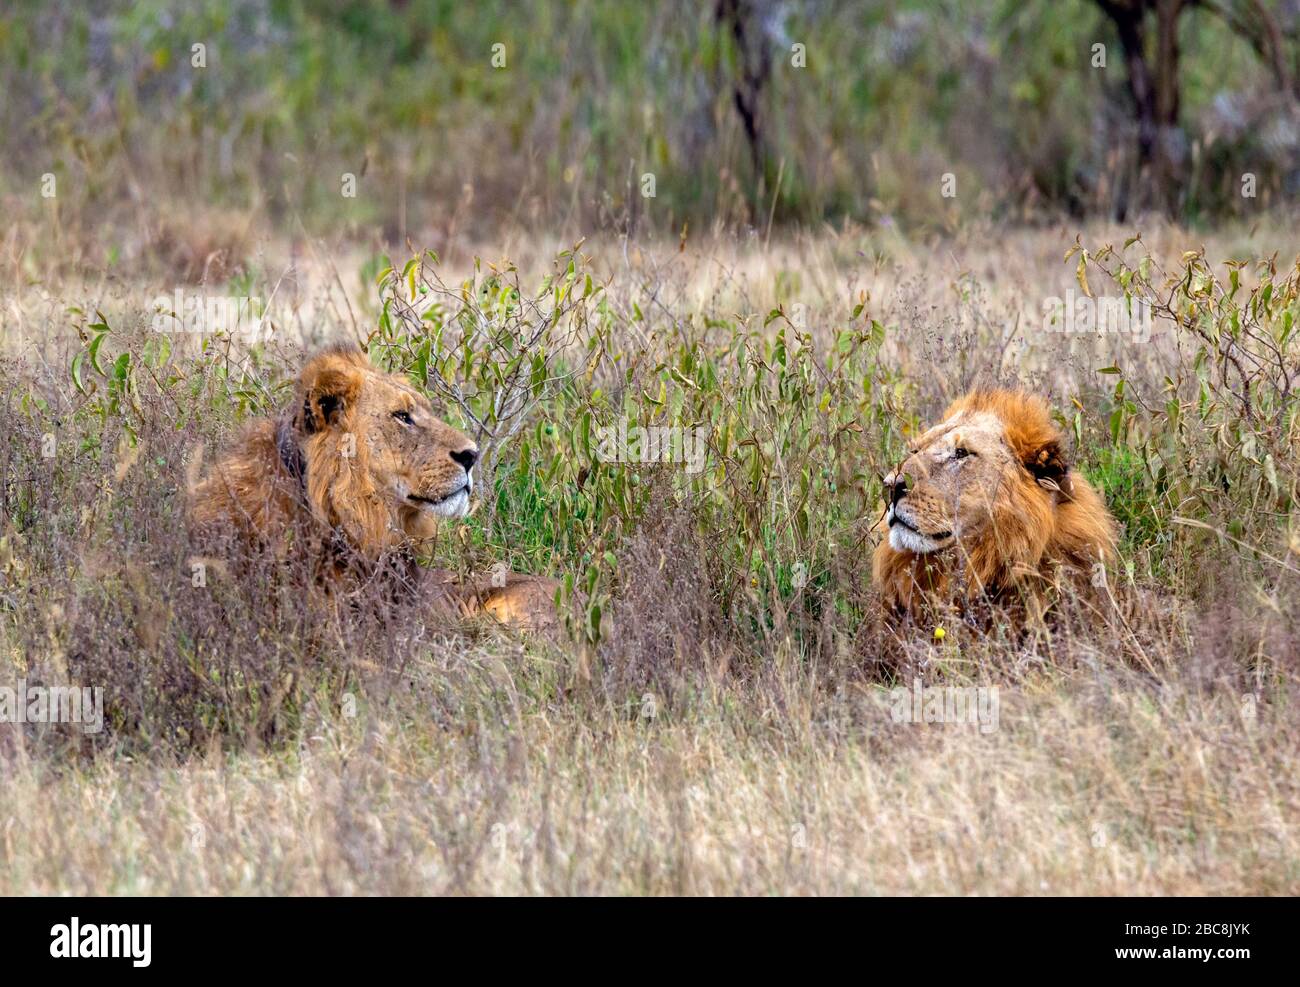 Lion (Panthera leo). Two male lions lying in long grass, Lake Nakuru National Park, Kenya, Africa Stock Photo